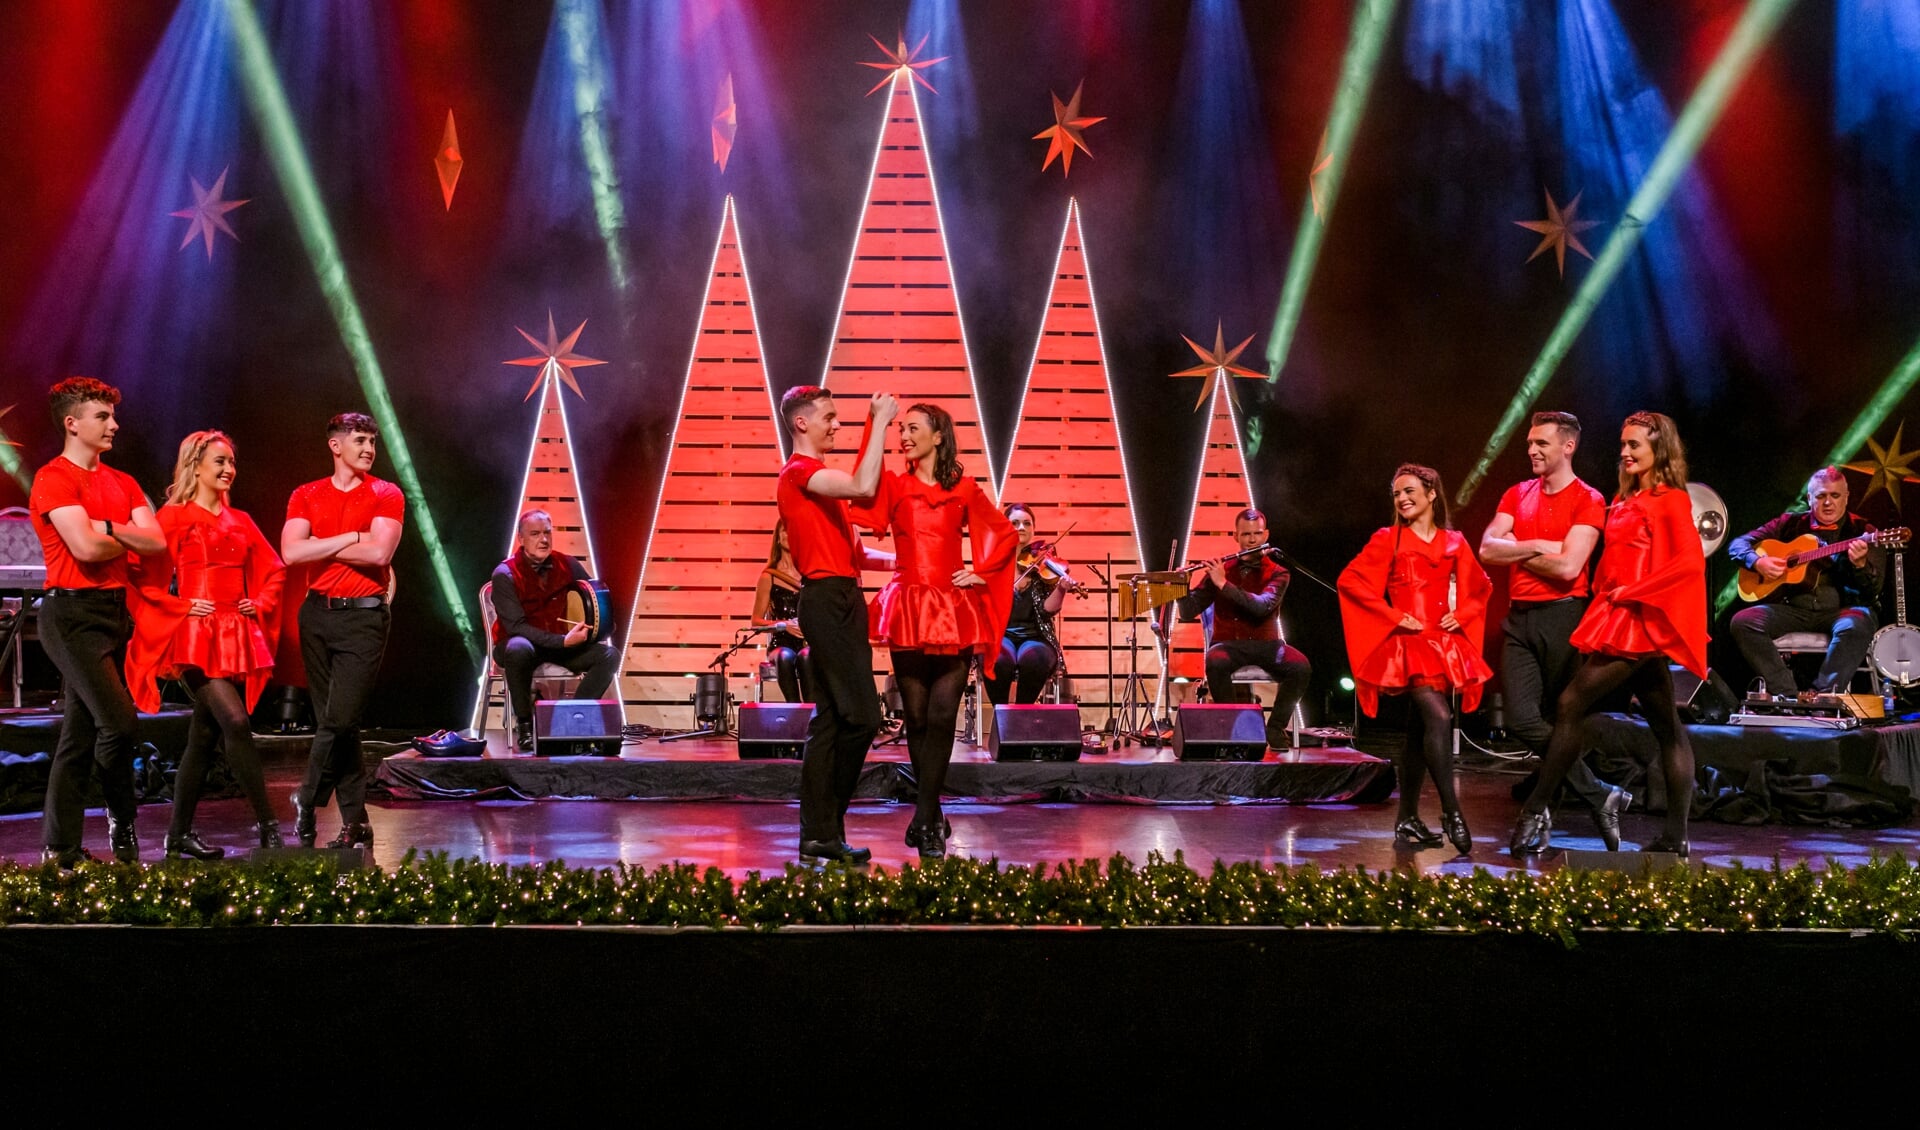 Liefhebbers van Ierse folk, Kerst én traditionele dans, kunnen hun hart ophalen bij deze grootse Ierse dans- en muziekshow